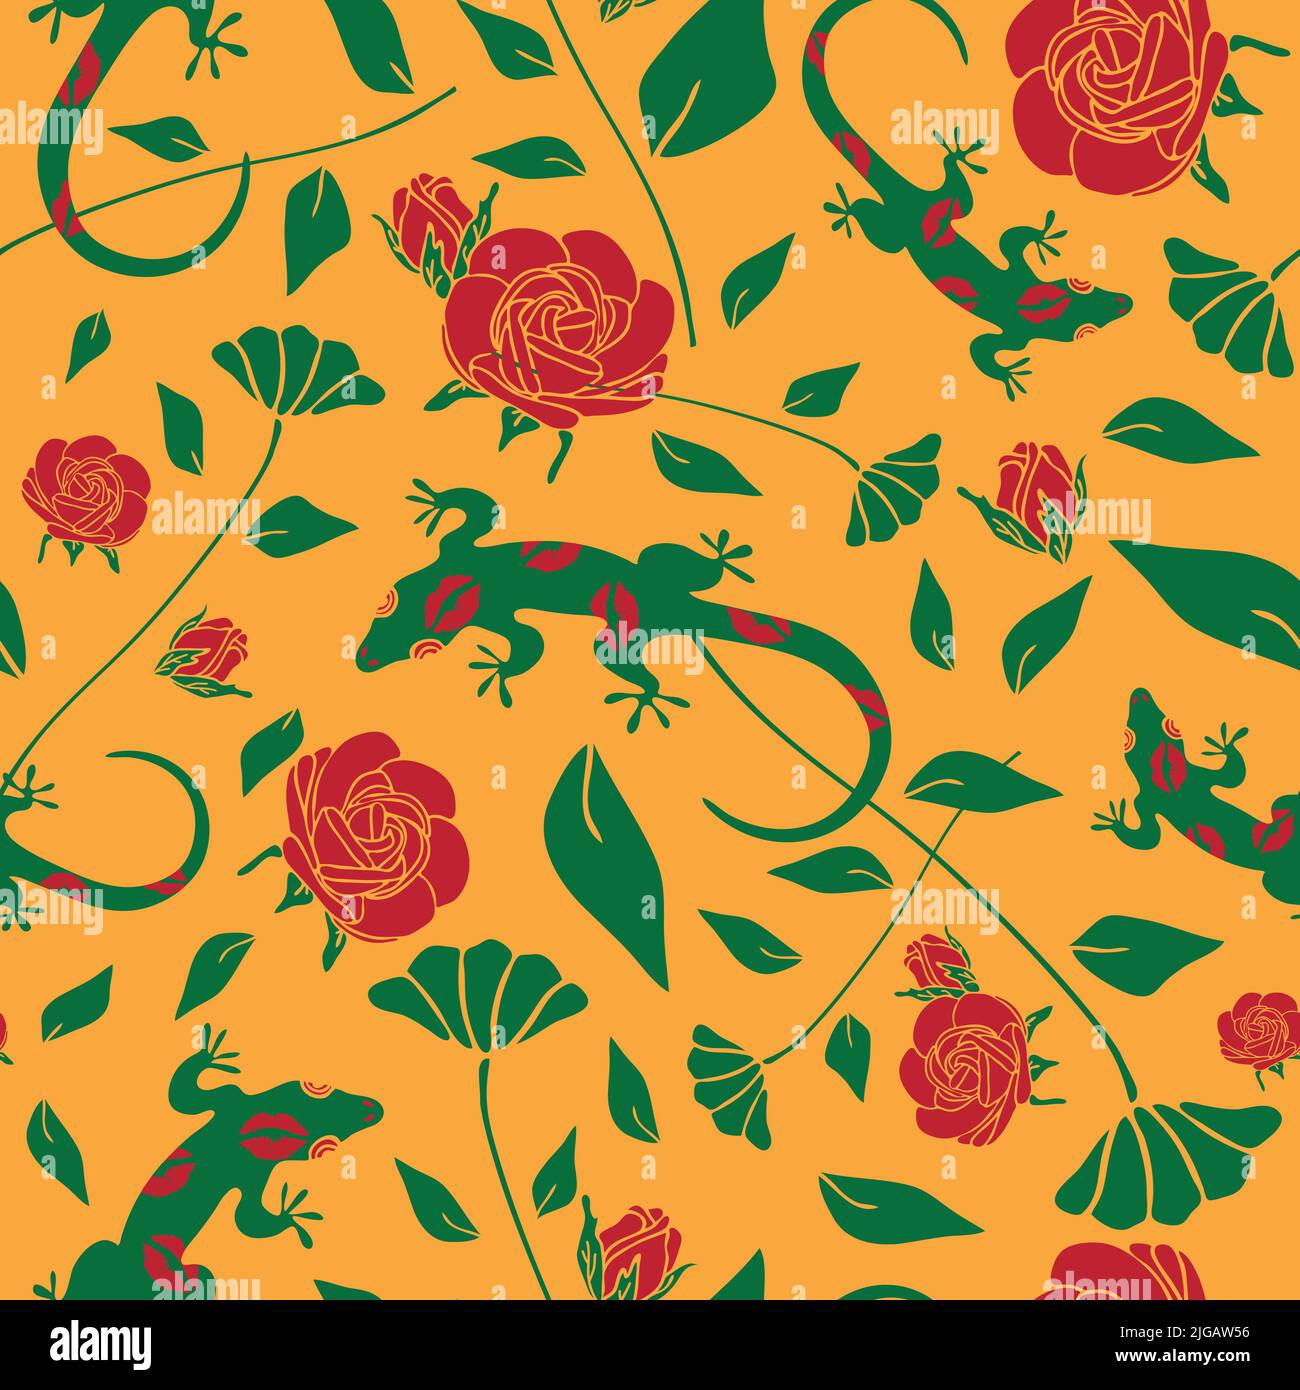 Nahtloses Vektor-Muster mit Eidechse und Rosen auf gelbem Hintergrund. Florales Tapetendesign mit grünem Gecko mit Küssen. Stock Vektor